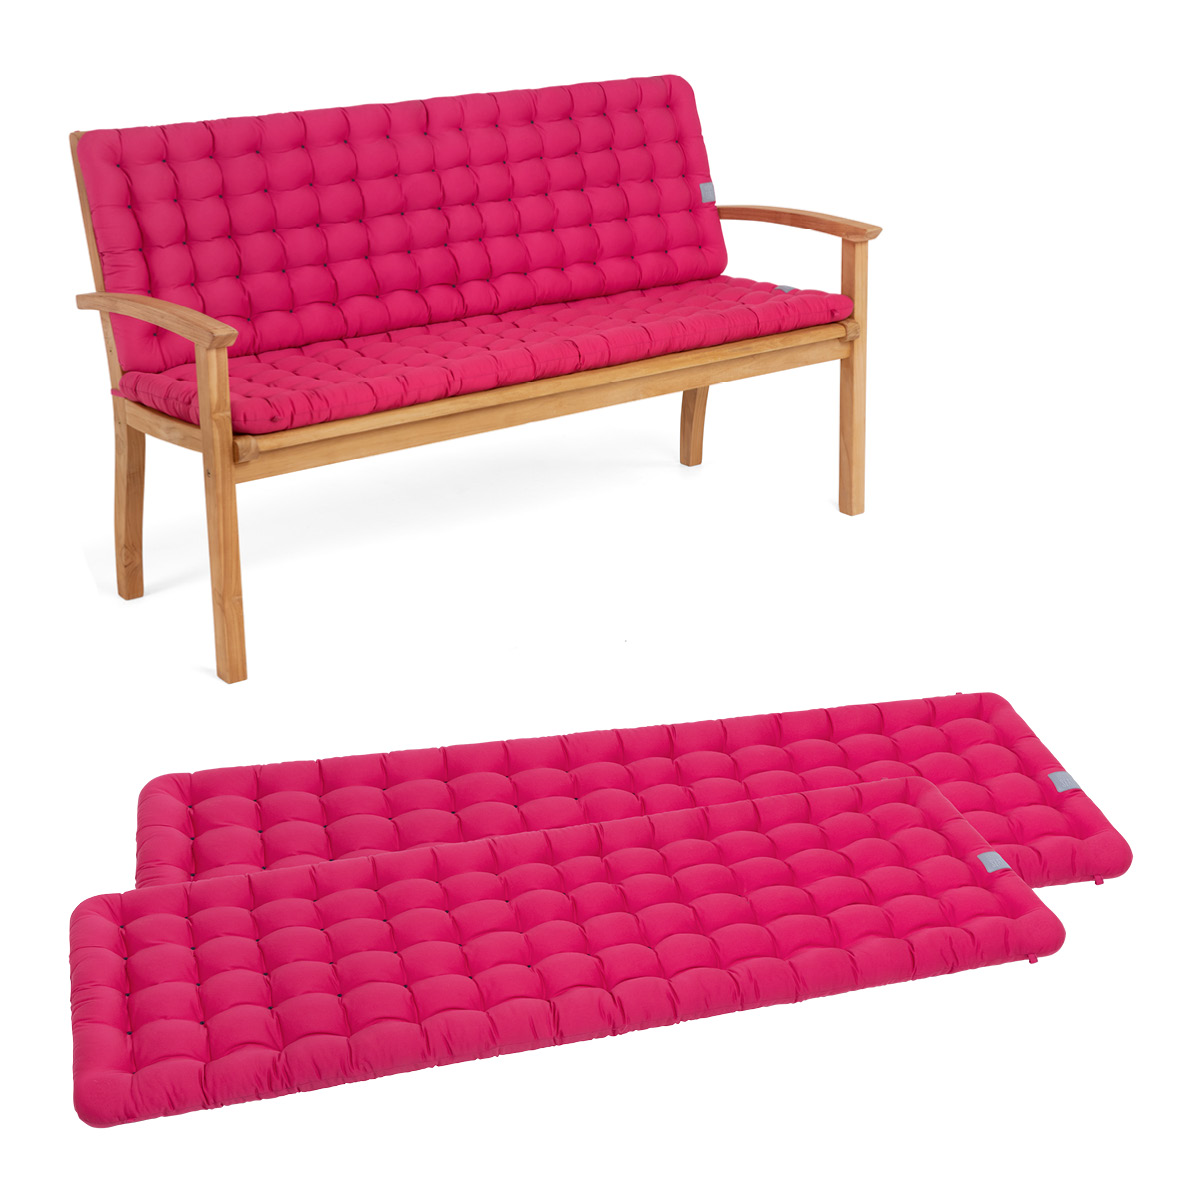 Gartenbank Auflagen mit Rückenteil in pink | bequemes Sitzpolster, wetterfeste Sitzauflage für Sitzbänke | HAVE A SEAT Living